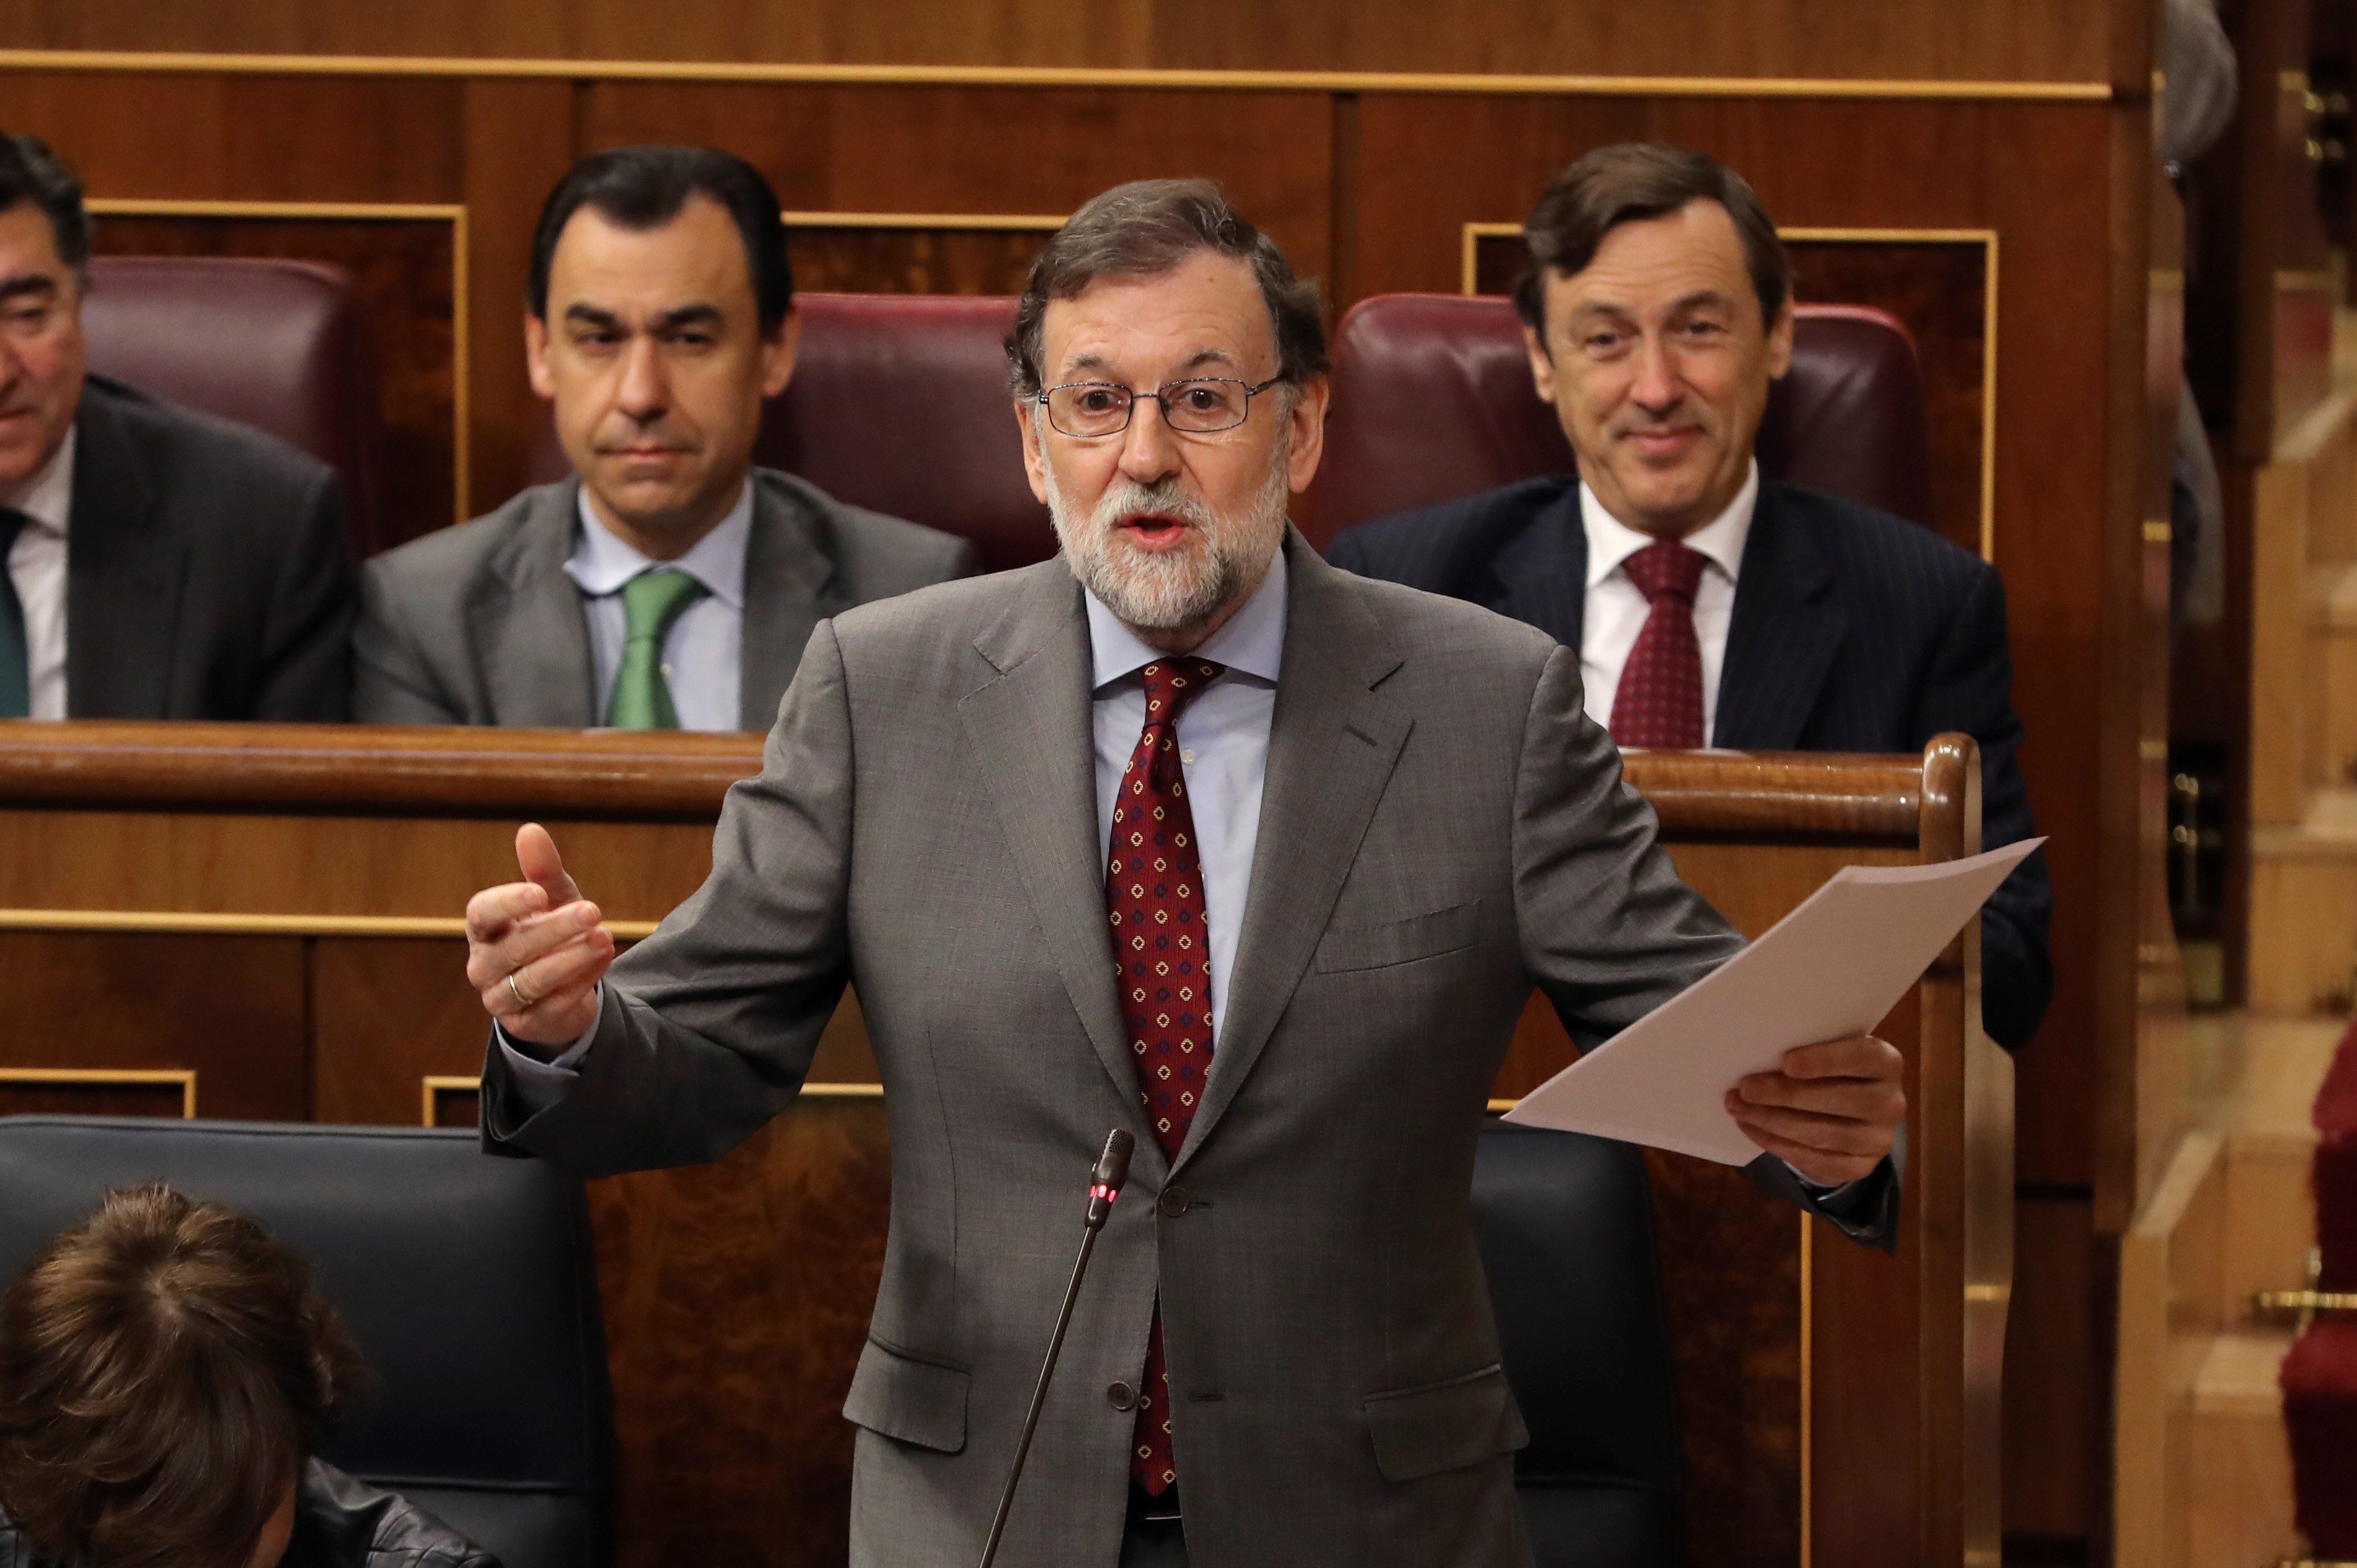 Rajoy avala l'ascens del coronel de l'1-O: "No hi va haver violència gratuïta"